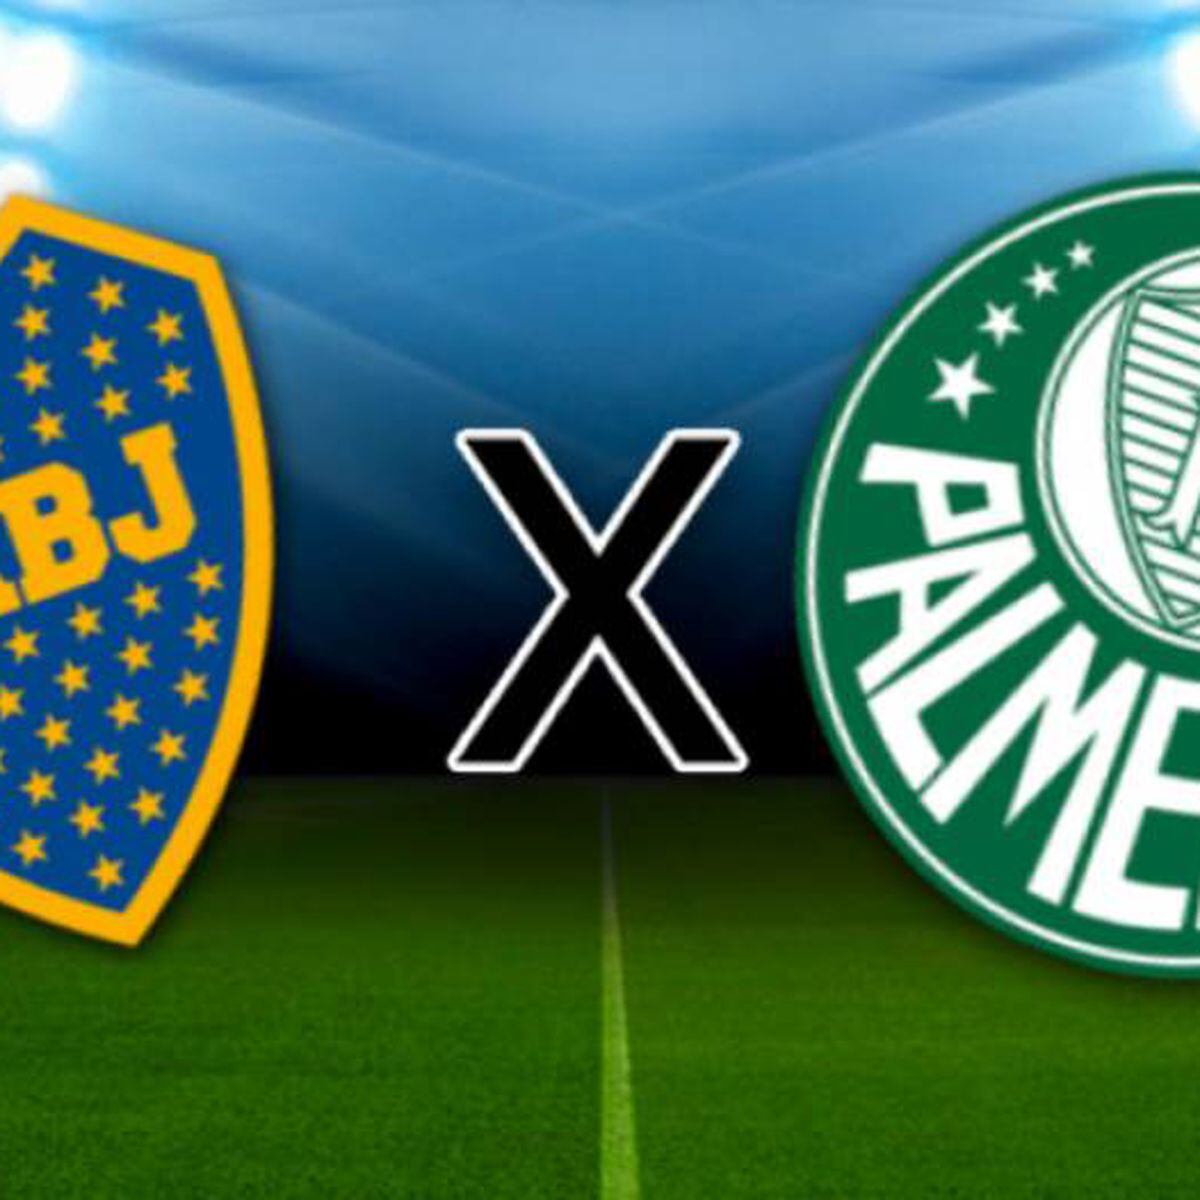 Palmeiras x Boca Juniors - Prováveis escalações, onde assistir e